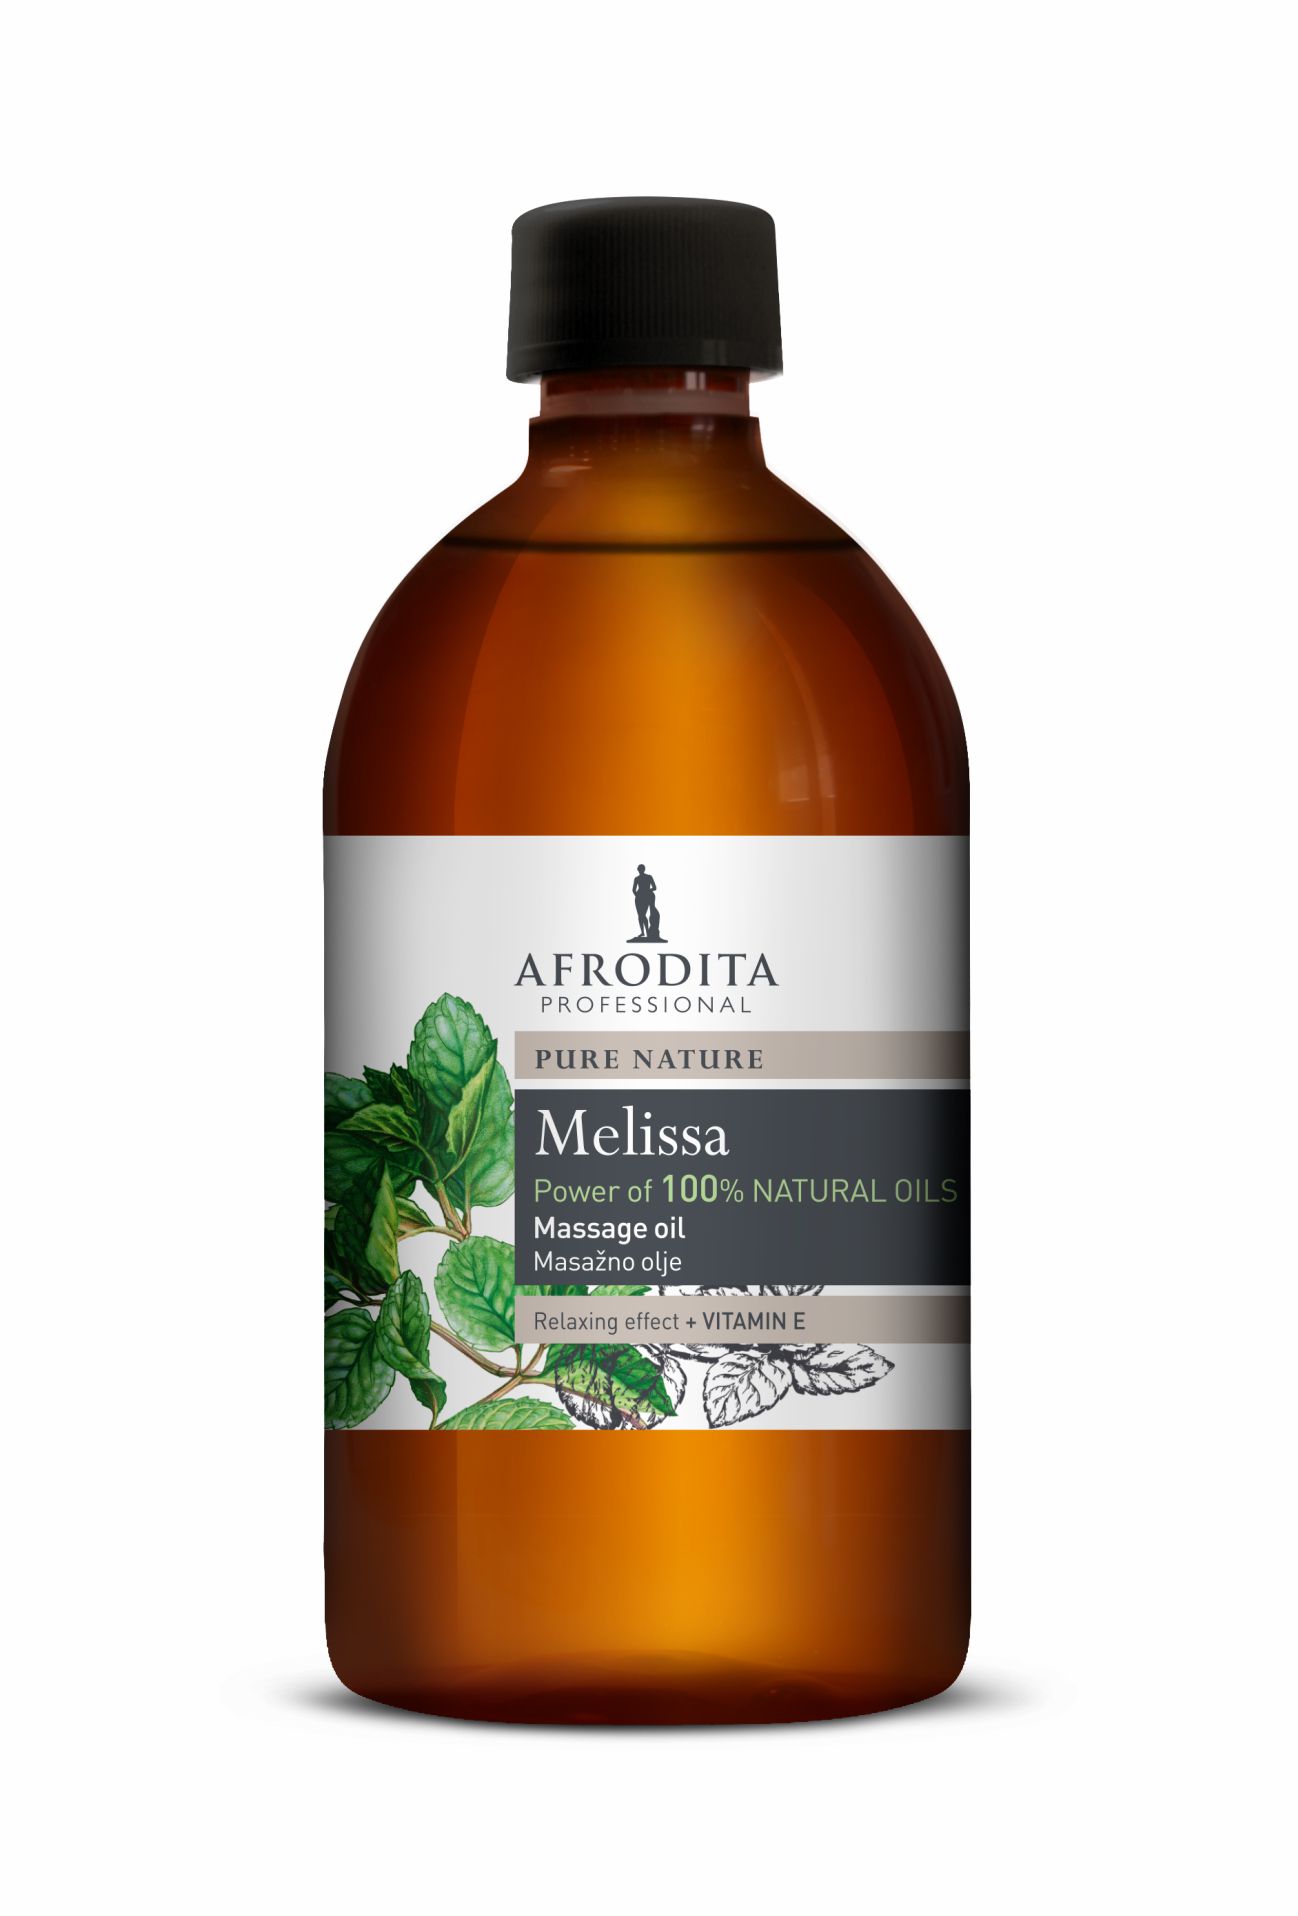 Kozmetika Afrodita - Olej do masażu 500 ml - Melisa - relaks i wyciszenie